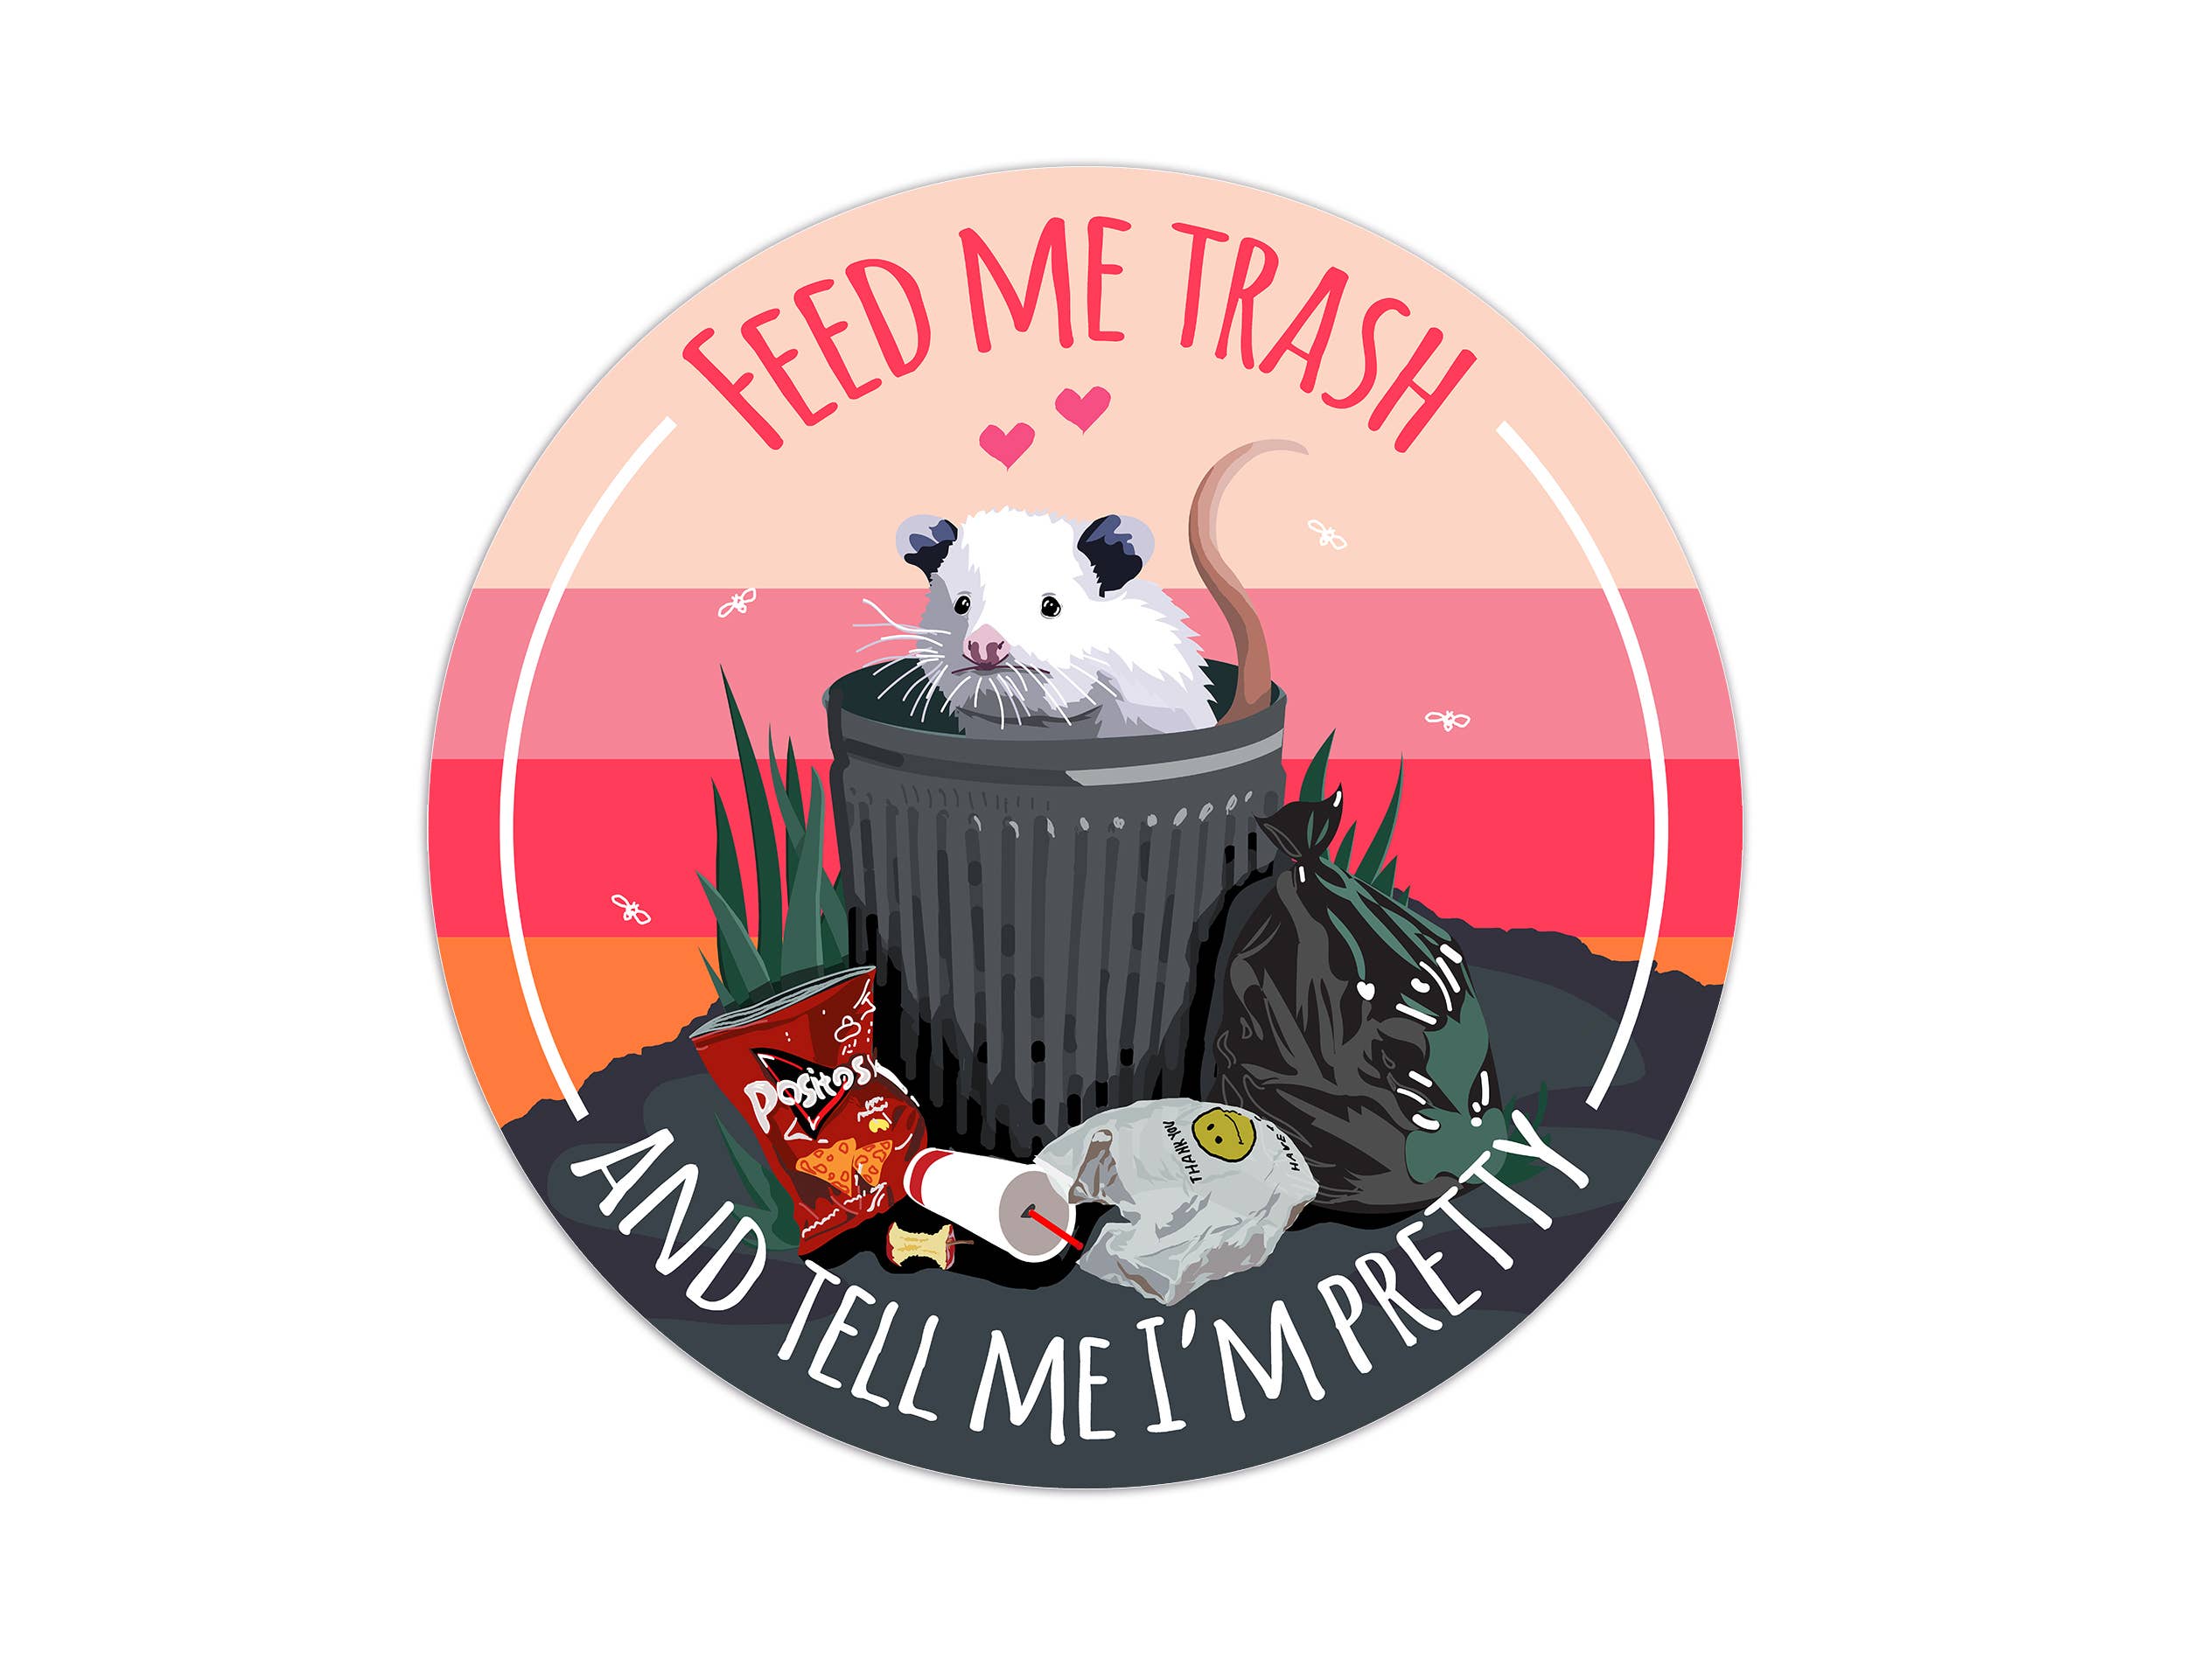 Feed Me Trash Possum Sticker